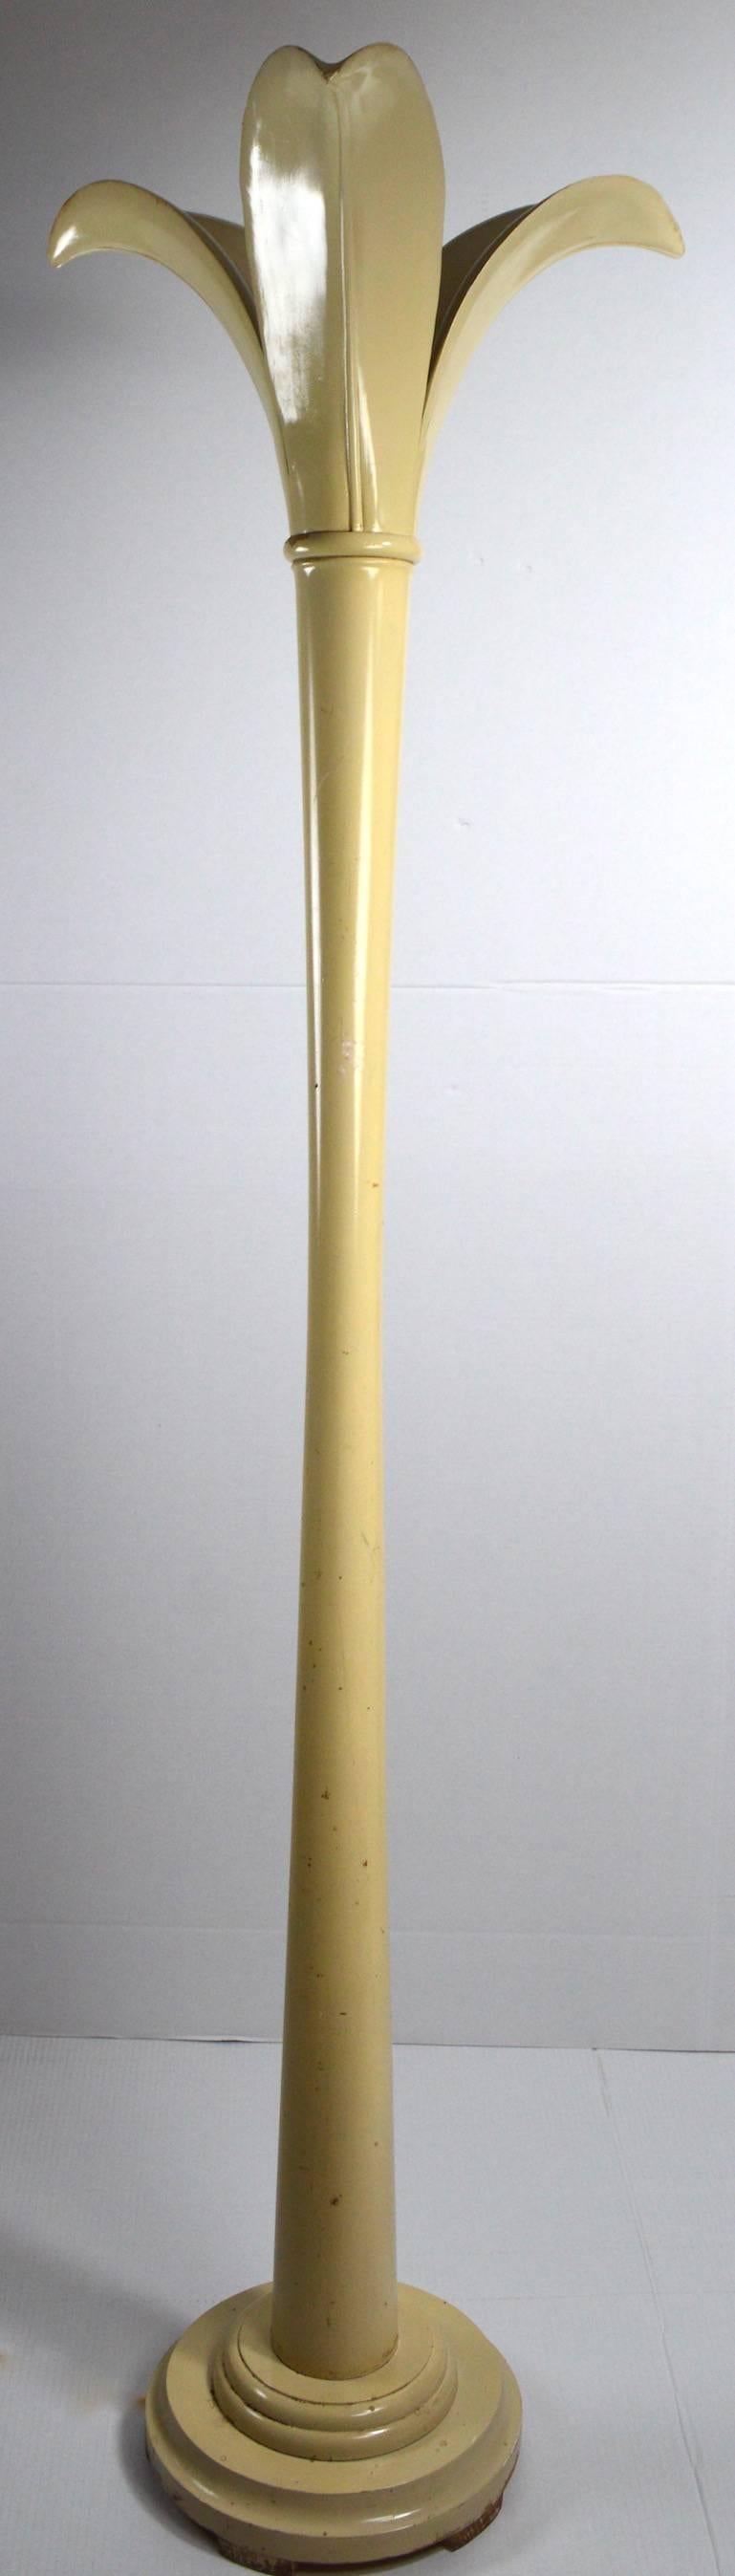 Weiß lackierte Stehlampe mit blattförmigem Aufsatz. Die Lackierung weist kosmetische Abnutzungserscheinungen auf, wie abgebildet. Maße: Oberteil 23